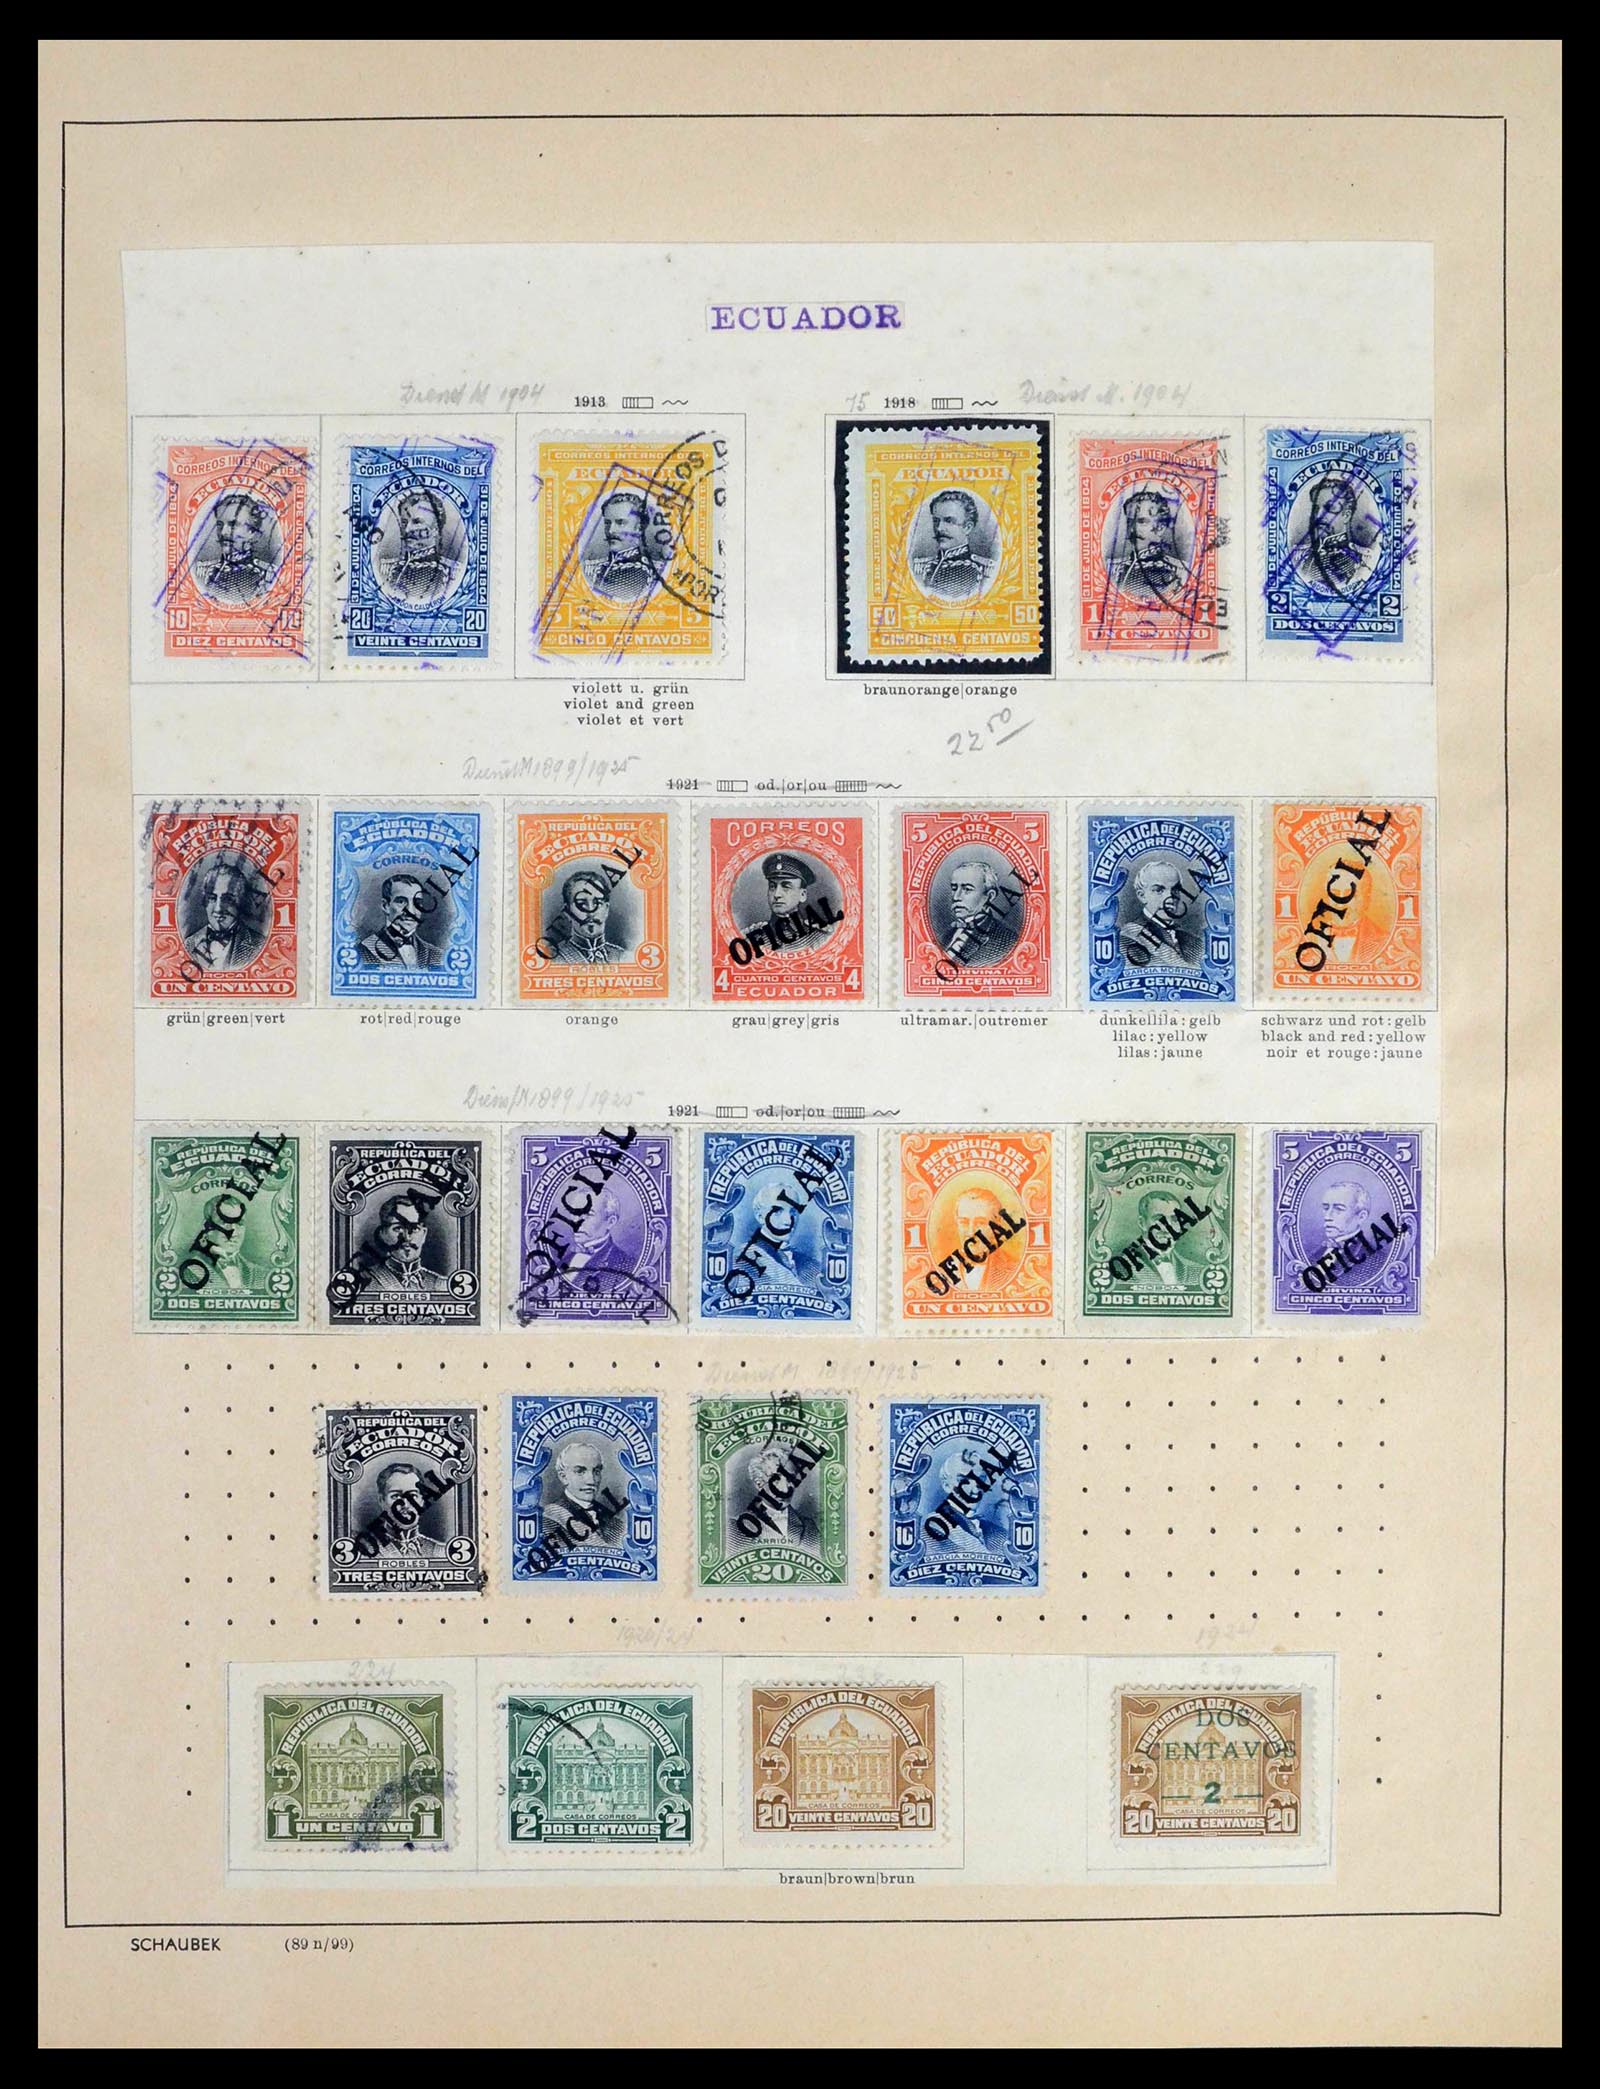 39456 0039 - Stamp collection 39456 Ecuador 1865-1960.